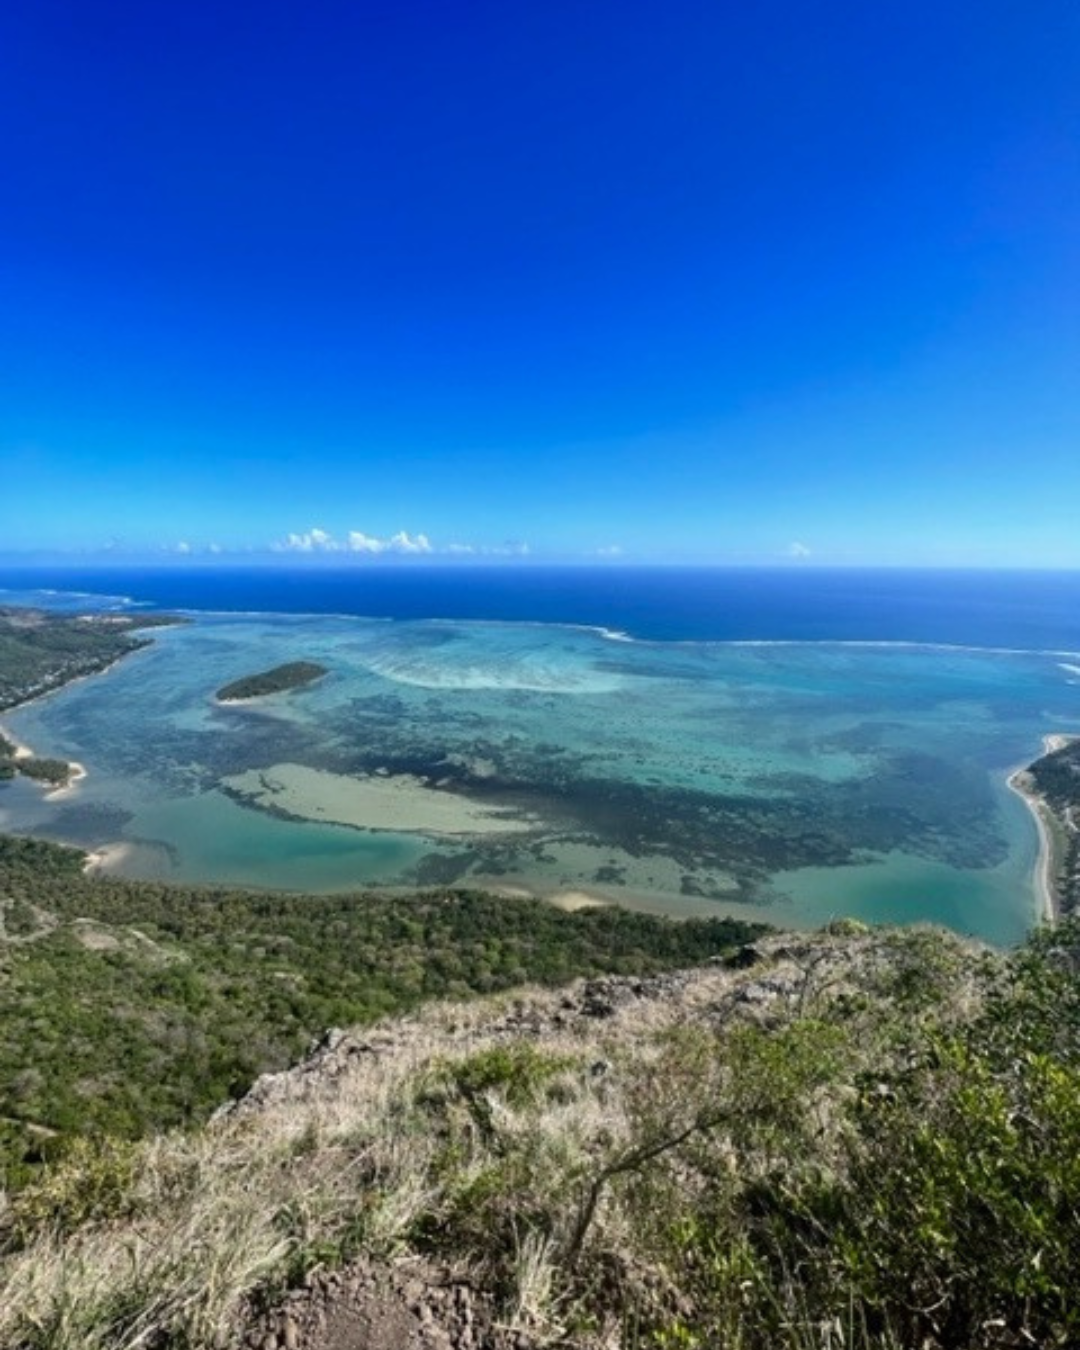 Gallery giorno 8
        Isole Mauritius
        Mauritius
        trekking viaggio di più giorni a piedi